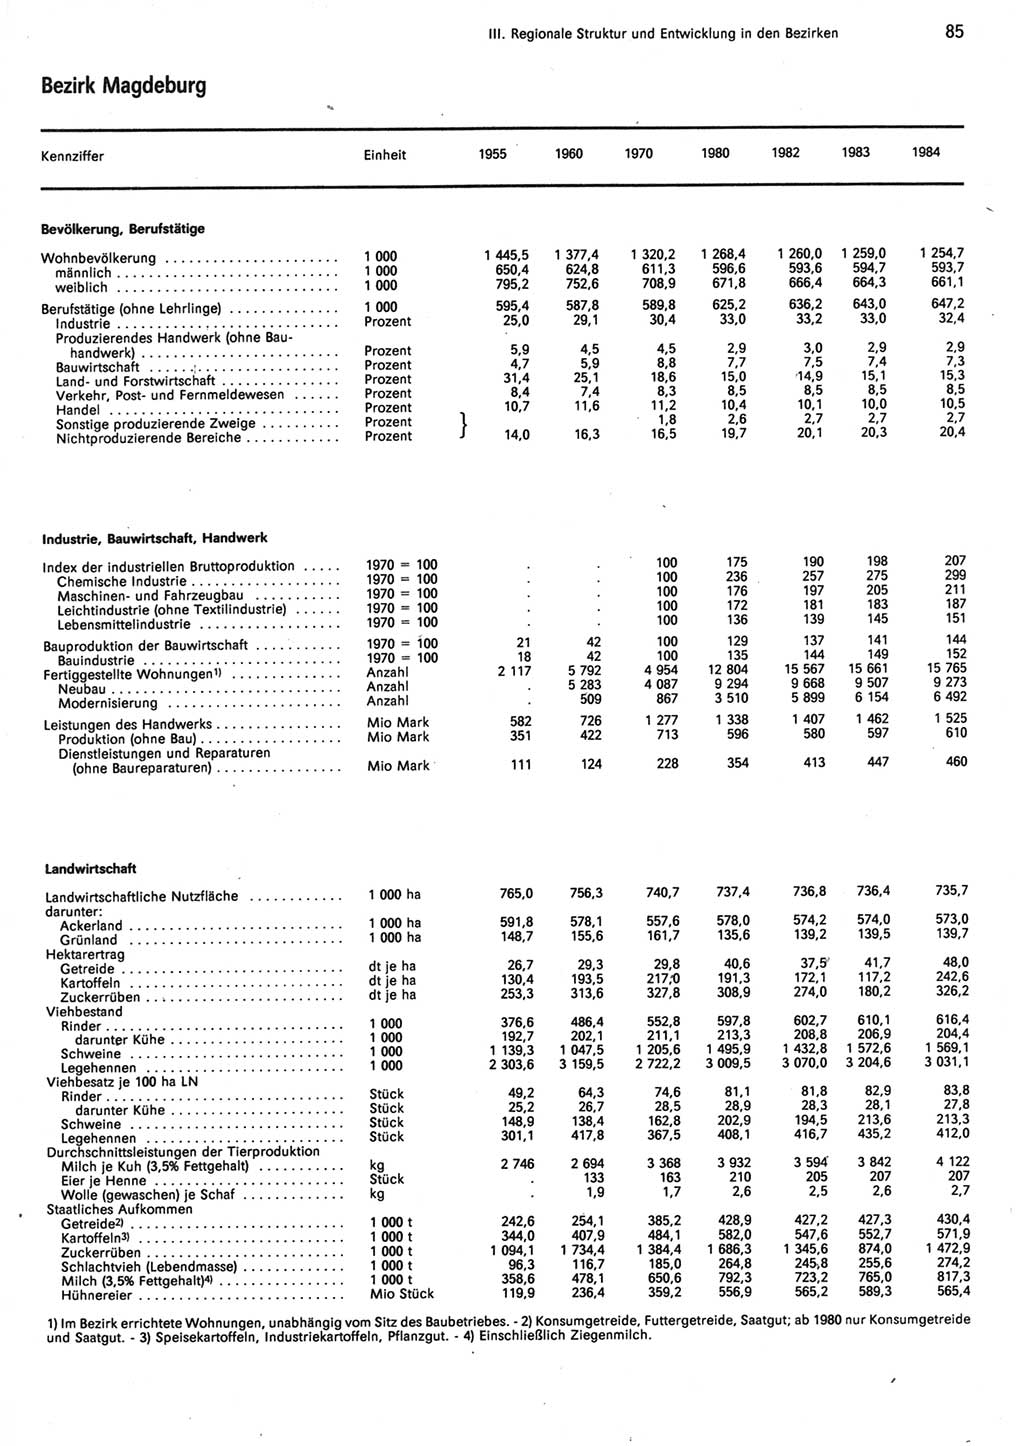 Statistisches Jahrbuch der Deutschen Demokratischen Republik (DDR) 1985, Seite 85 (Stat. Jb. DDR 1985, S. 85)